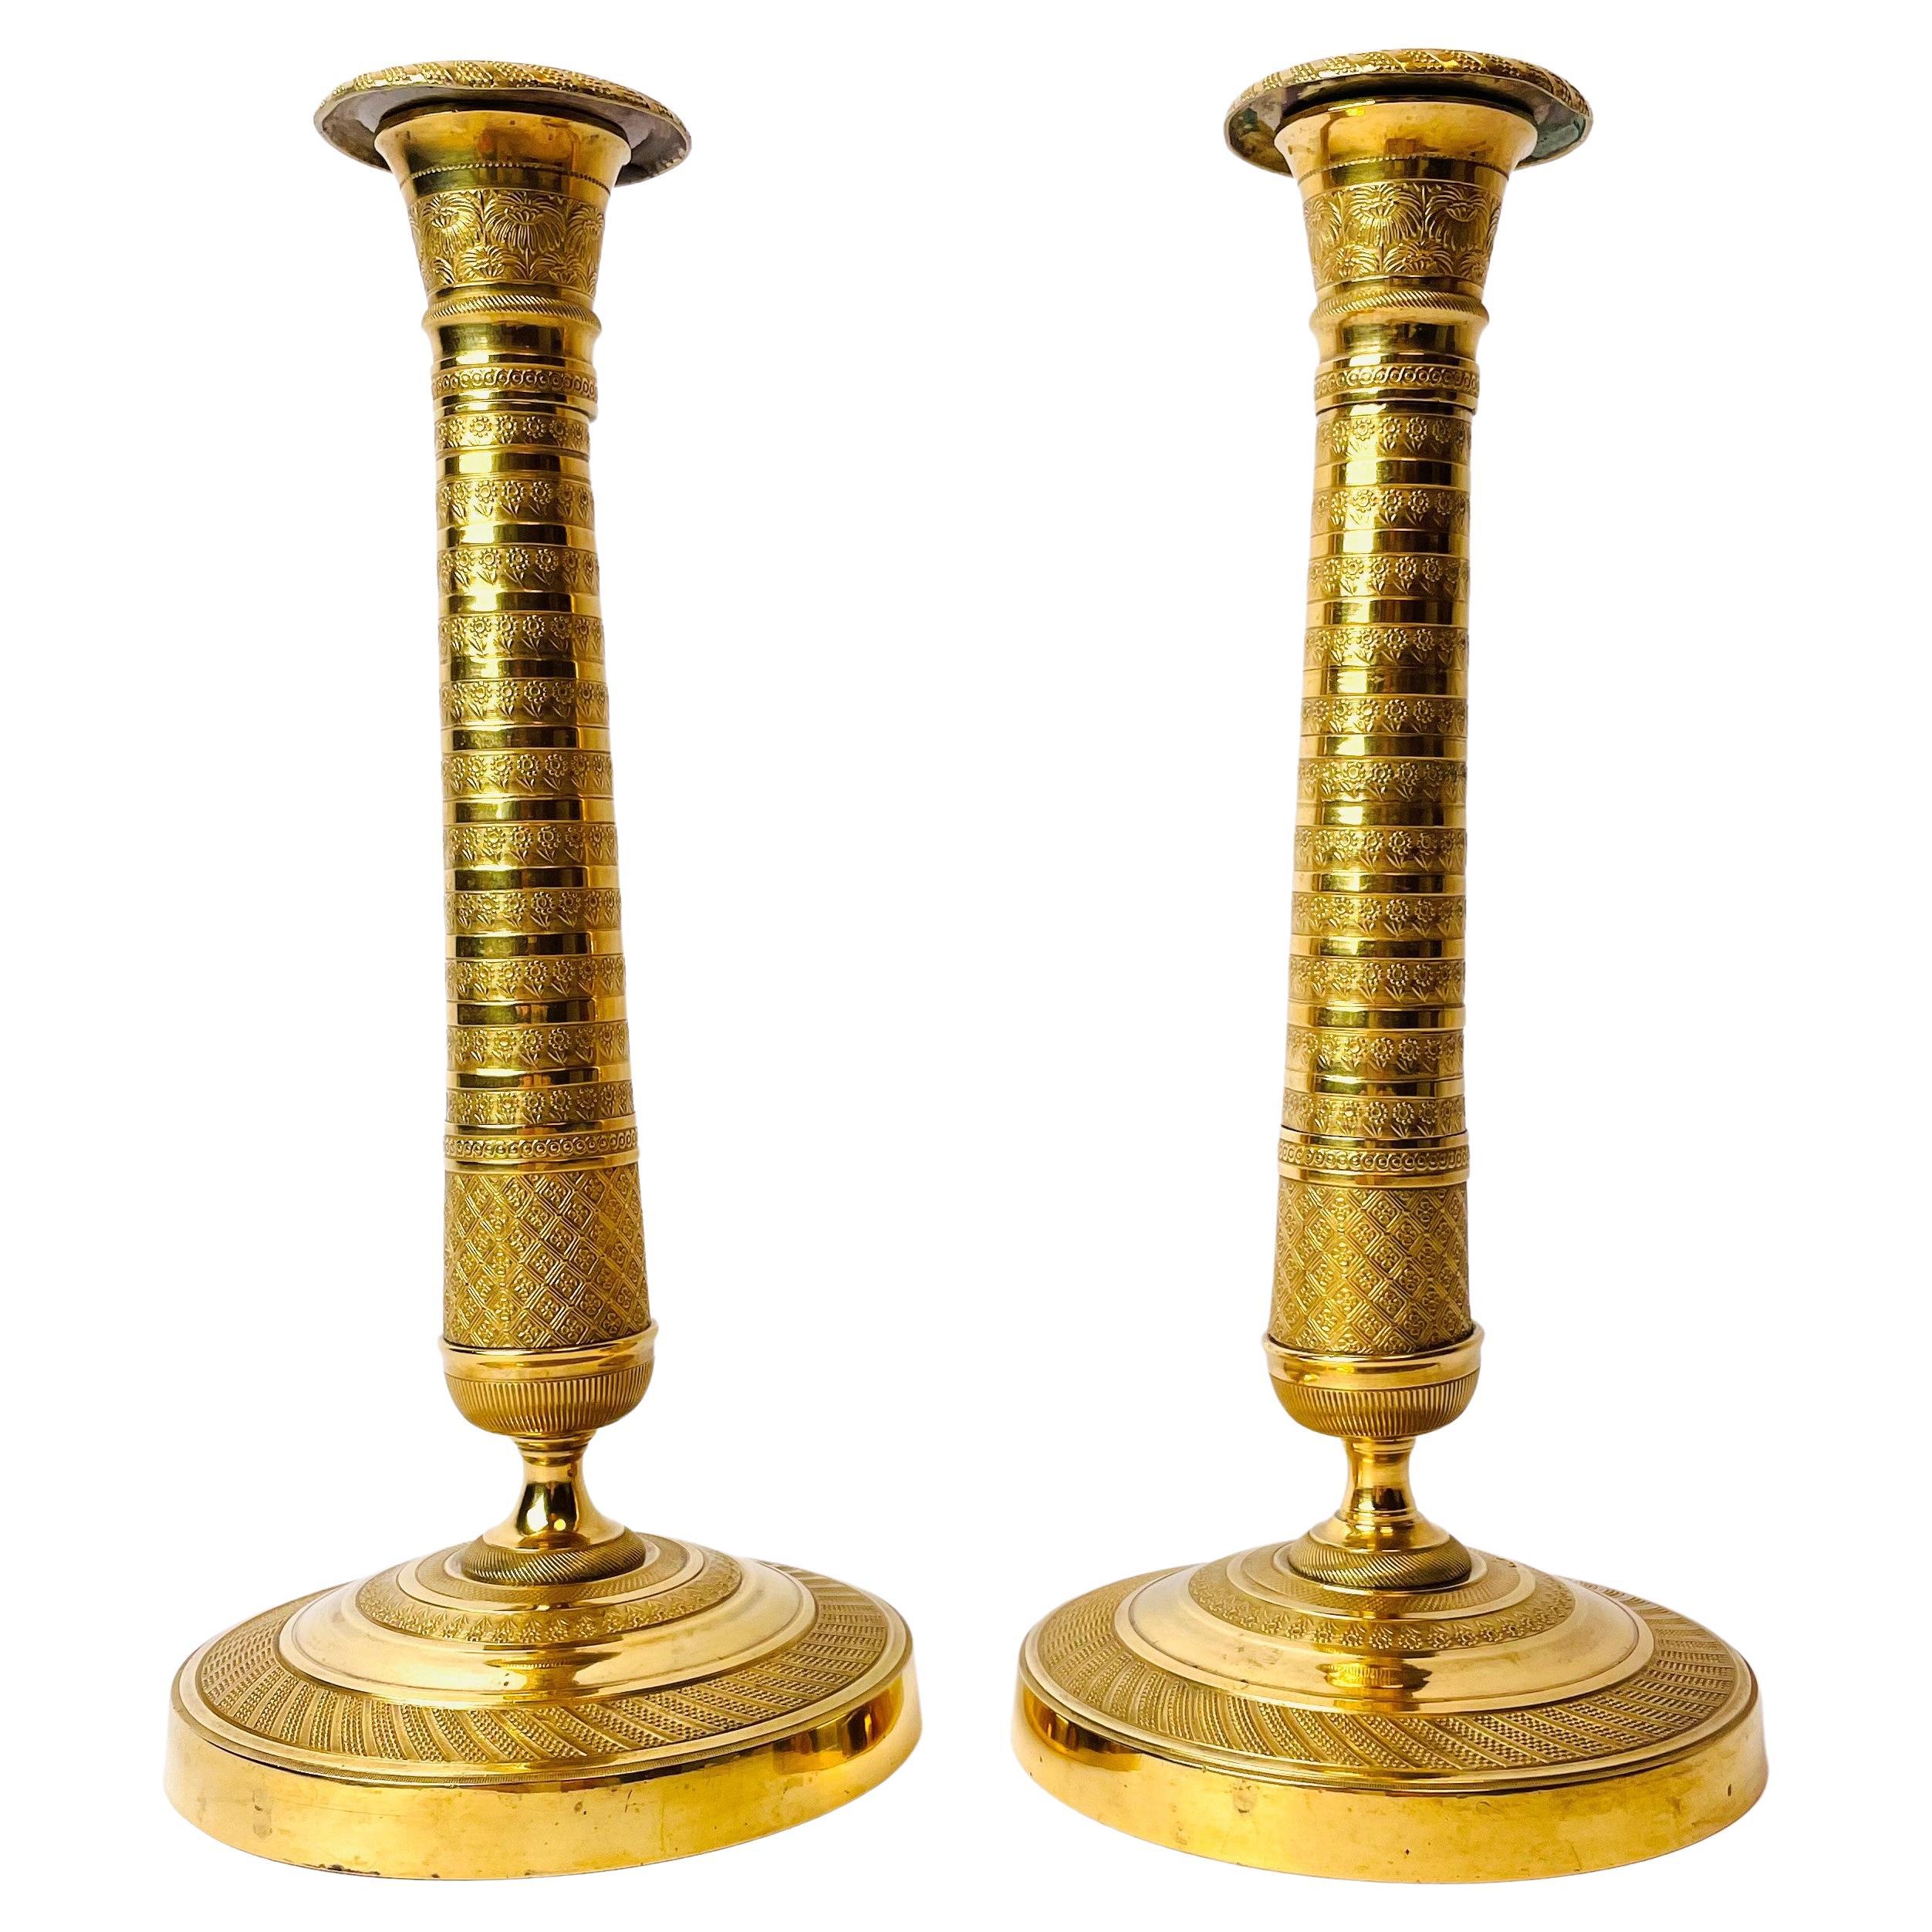 Paar Kerzenständer aus vergoldeter Bronze aus dem frühen 19. Jahrhundert, Französisches Empire